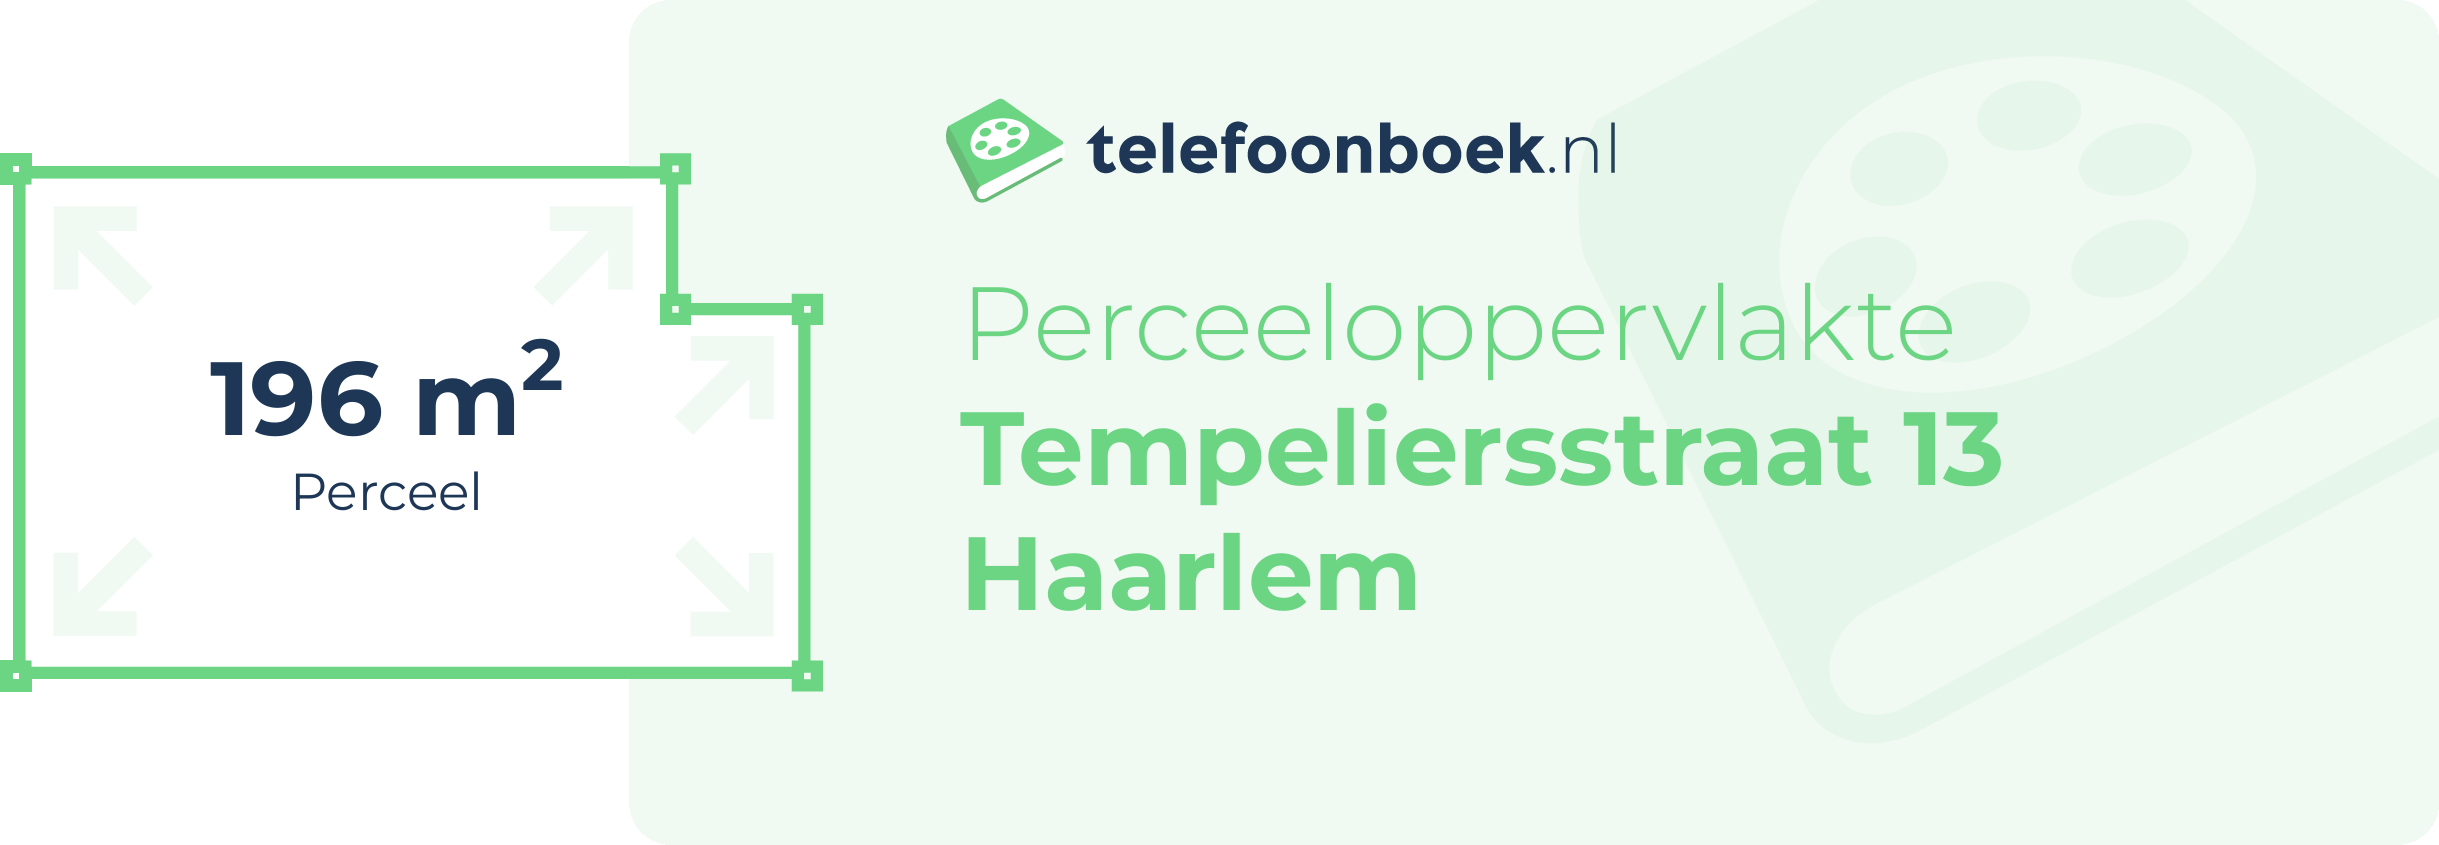 Perceeloppervlakte Tempeliersstraat 13 Haarlem